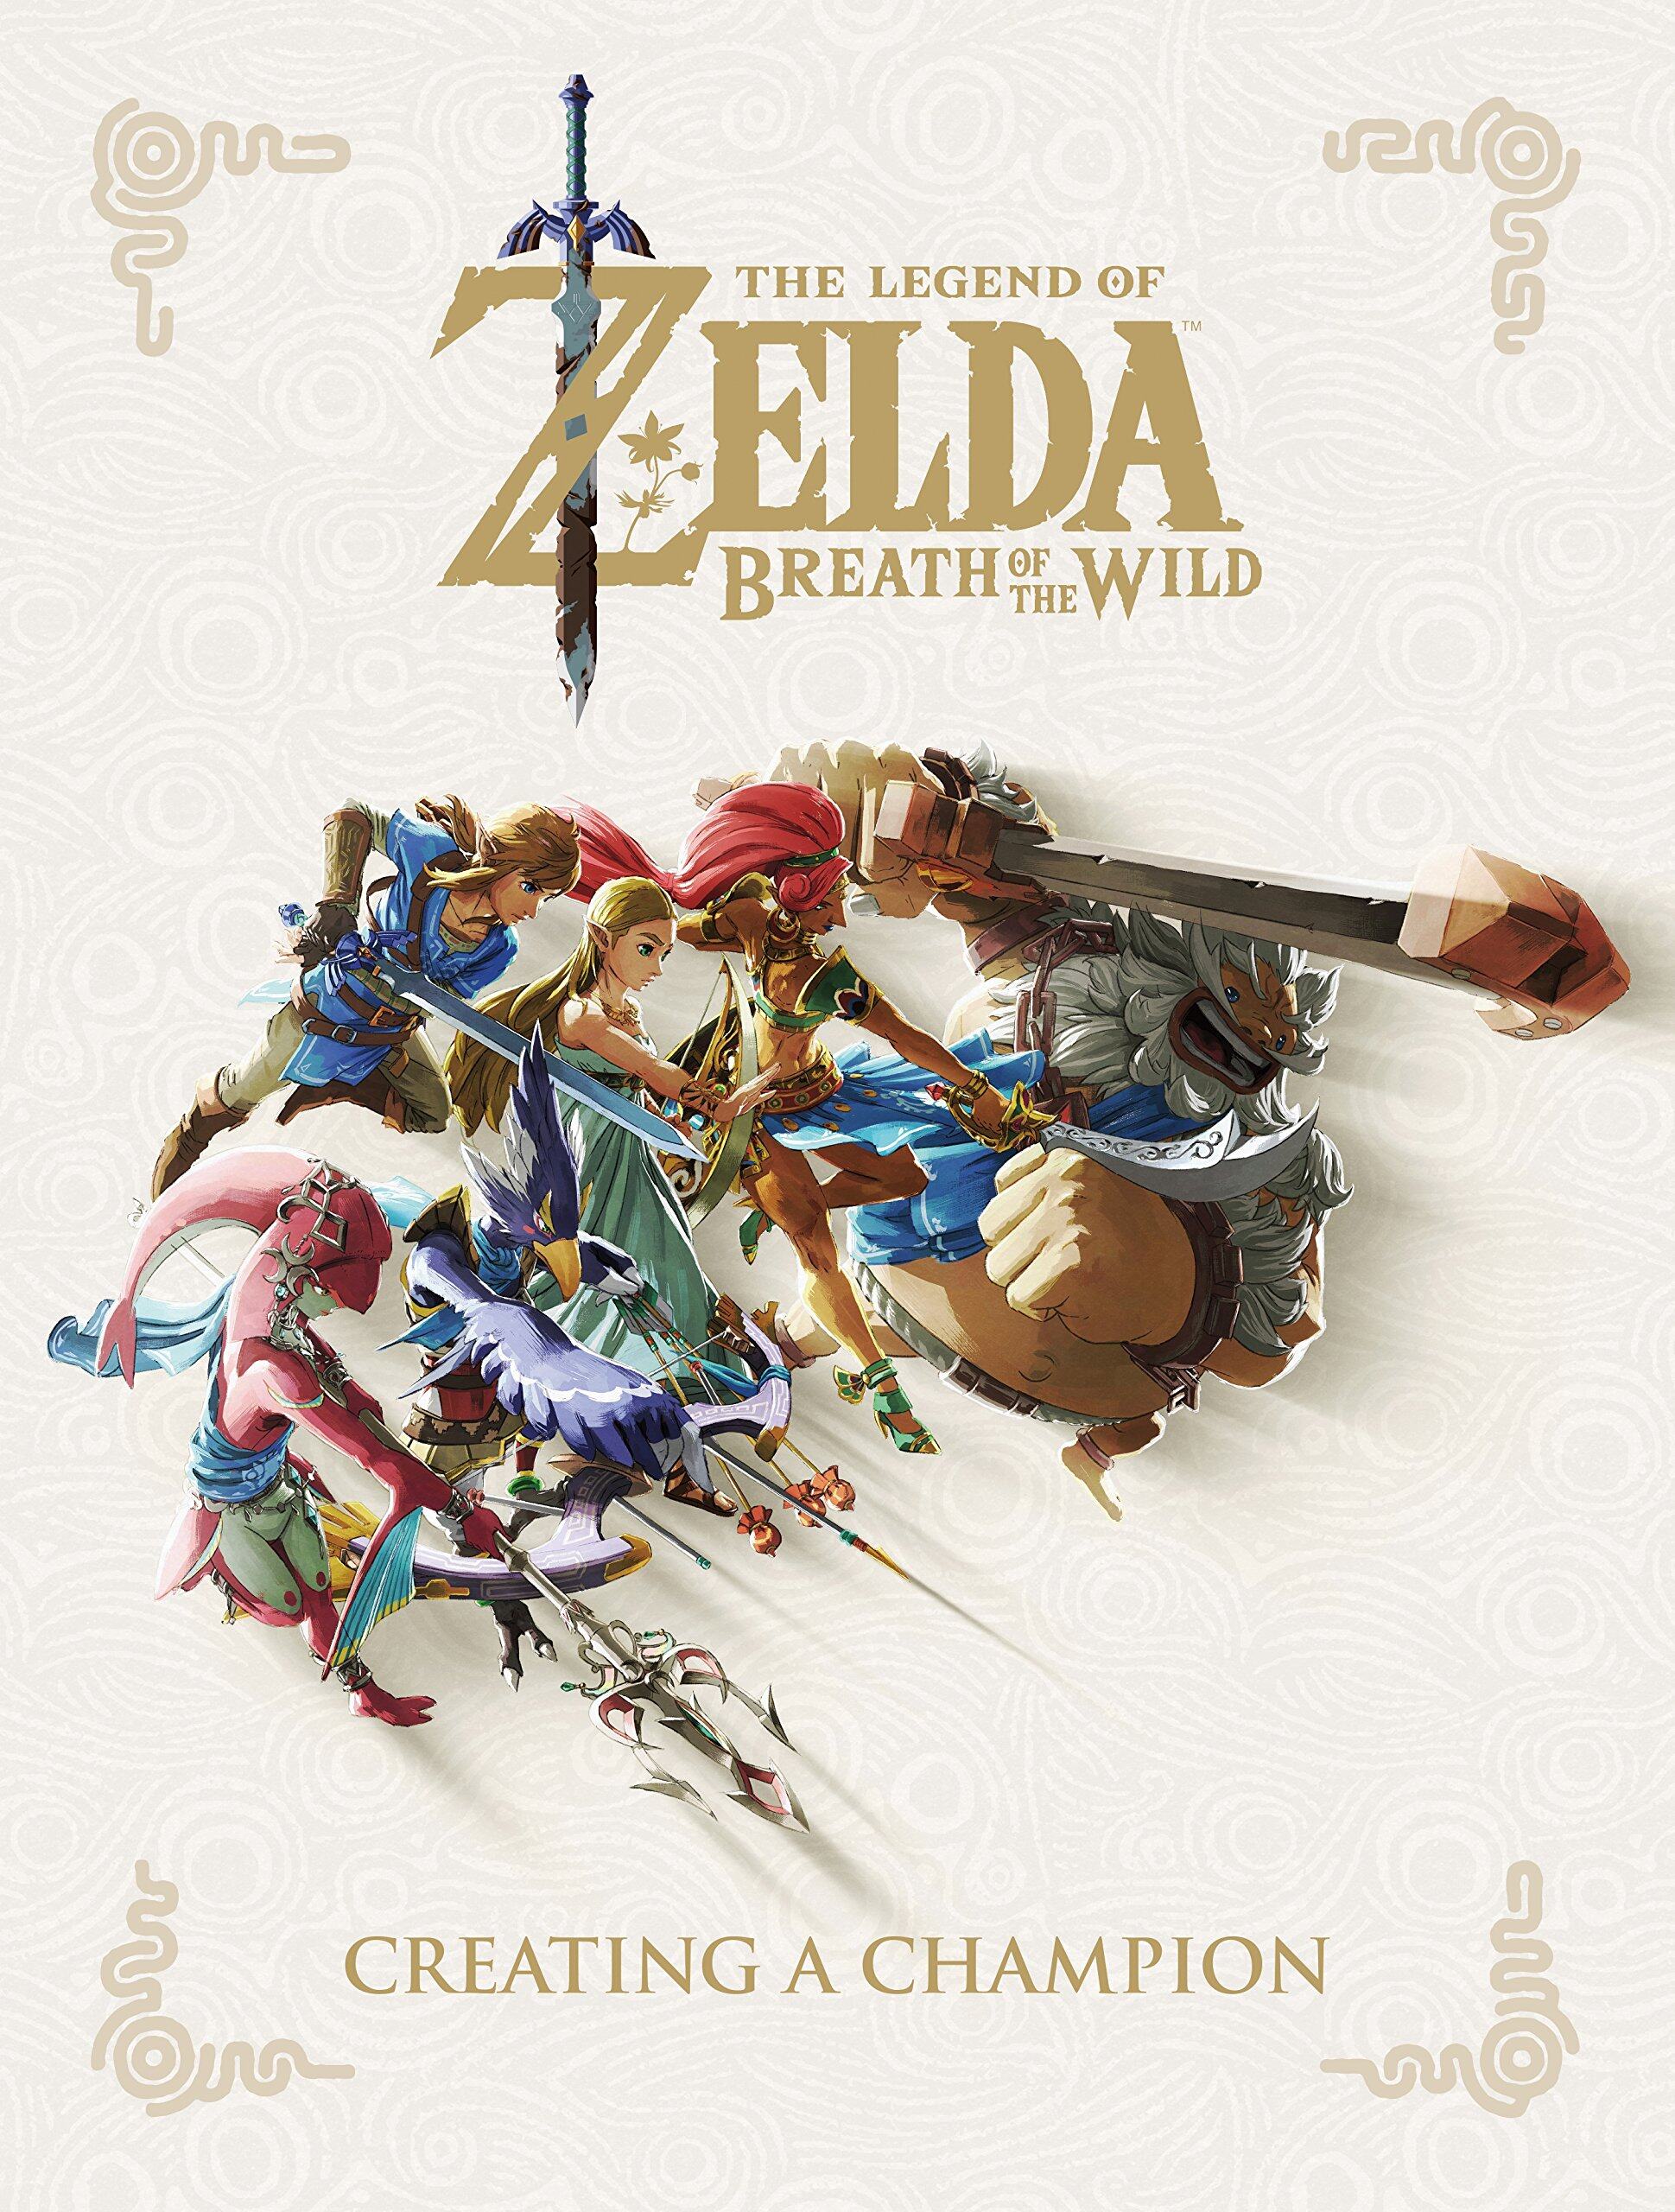 The Legend of Zelda: Breath of the Wild หนังสือภาษาอังกฤษพร้อมส่ง